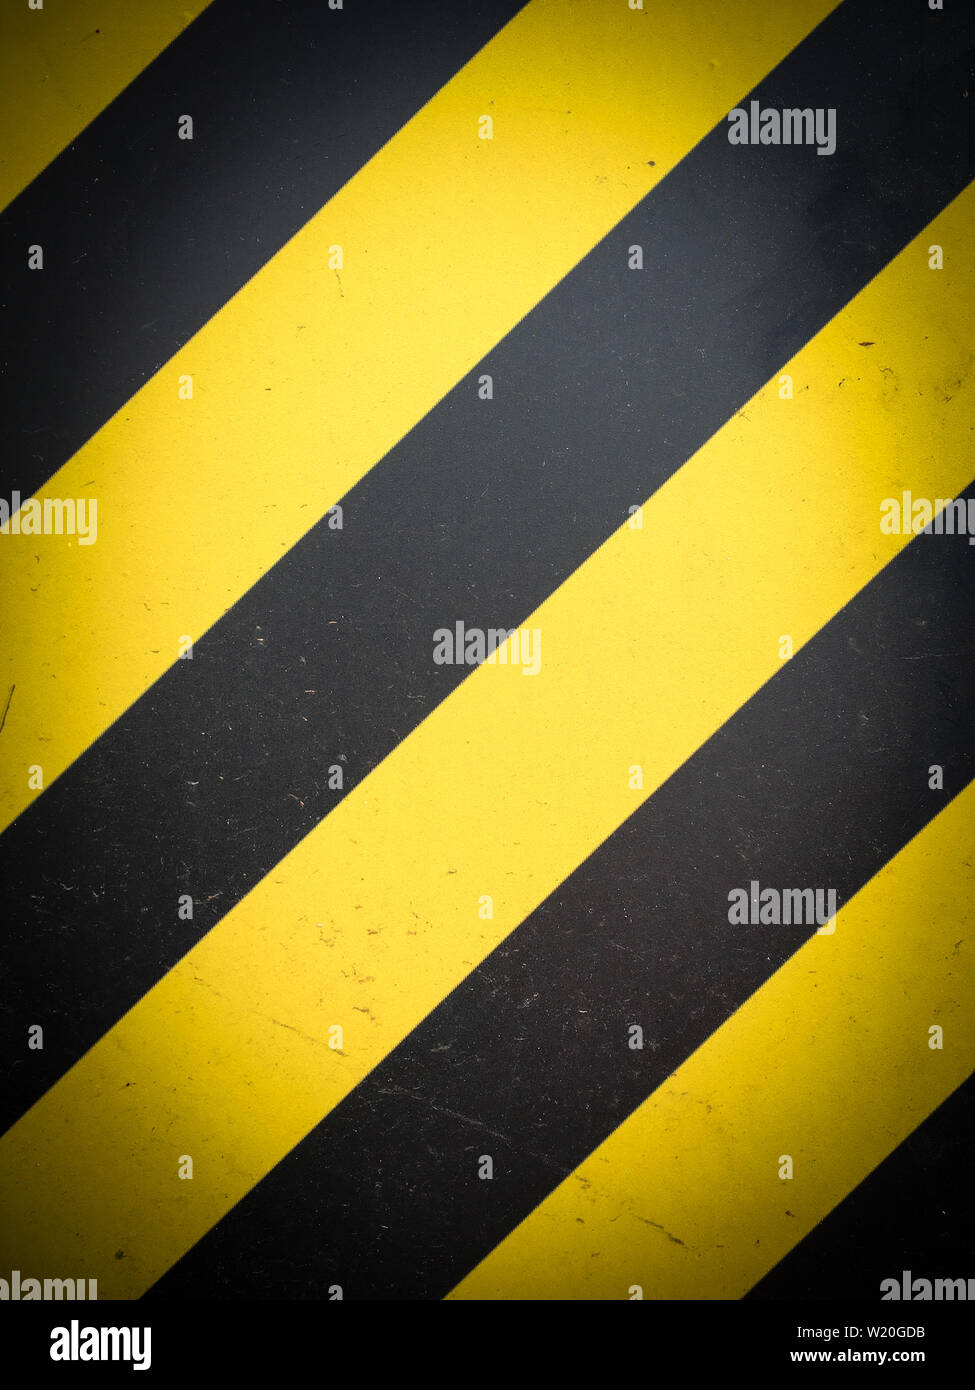 https://c8.alamy.com/comp/W20GDB/yellow-black-striped-hazard-warning-background-W20GDB.jpg